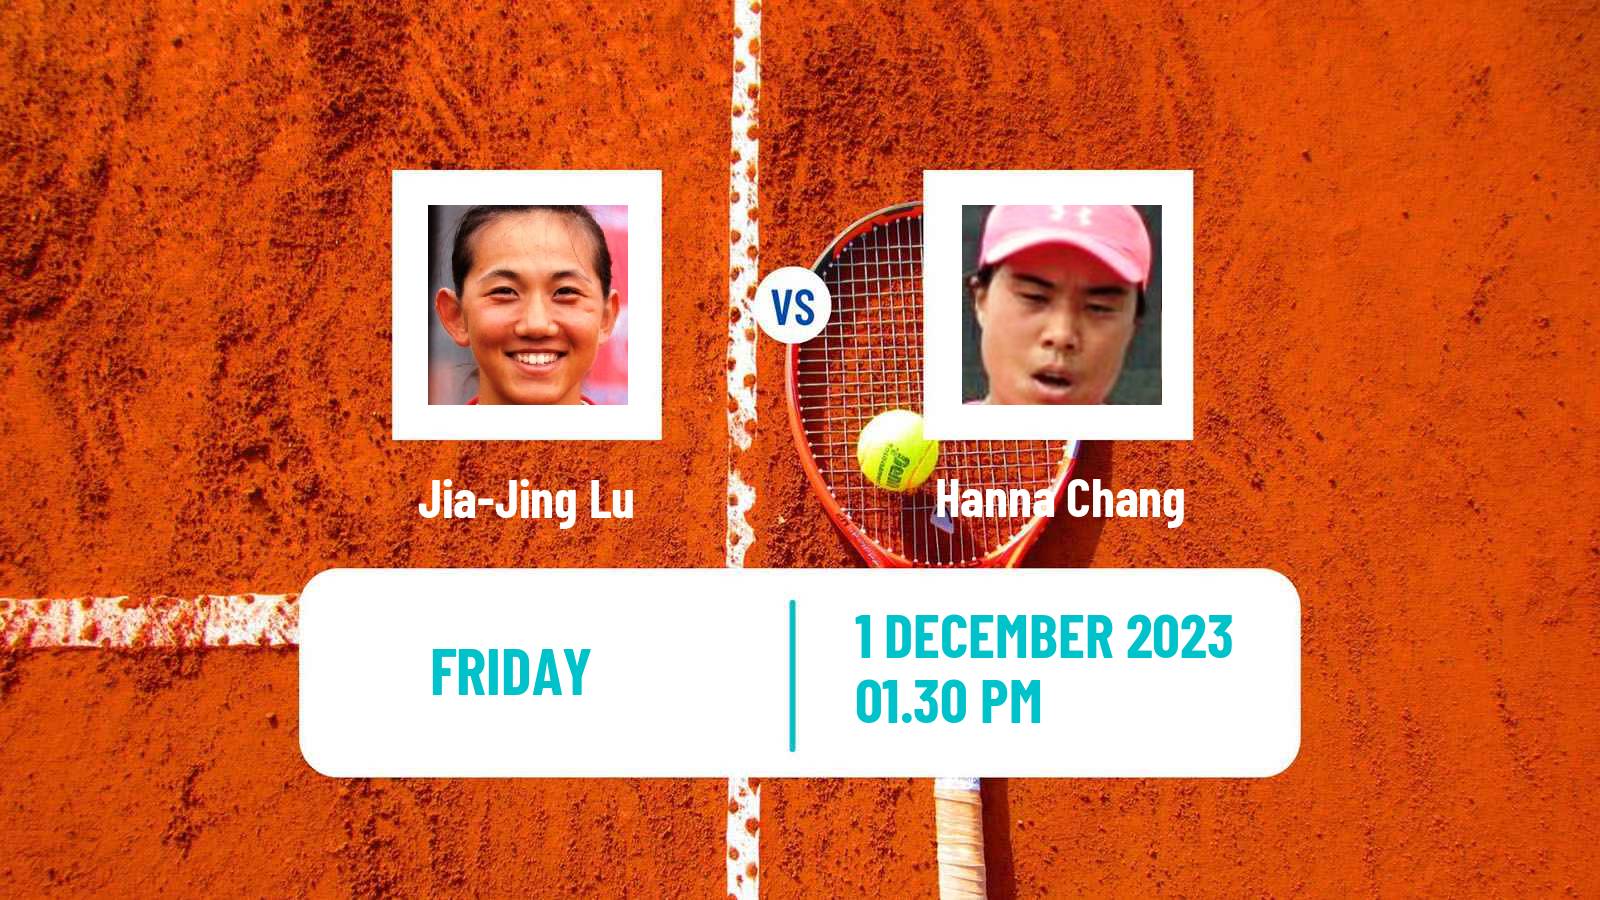 Tennis ITF W40 Veracruz Women Jia-Jing Lu - Hanna Chang